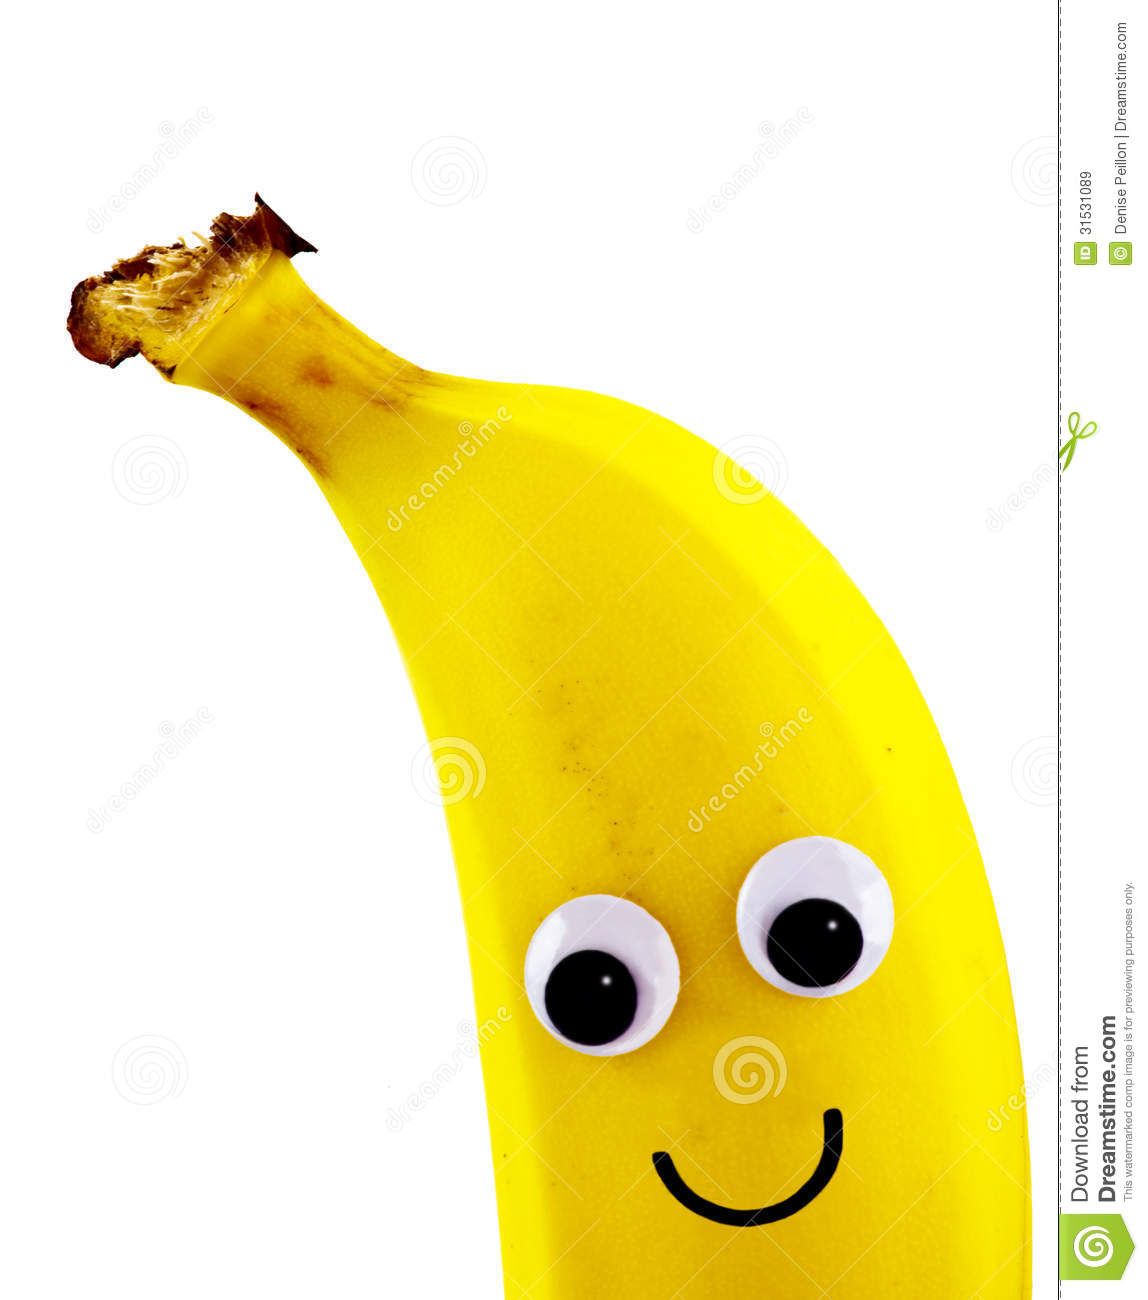 eye clipart banana